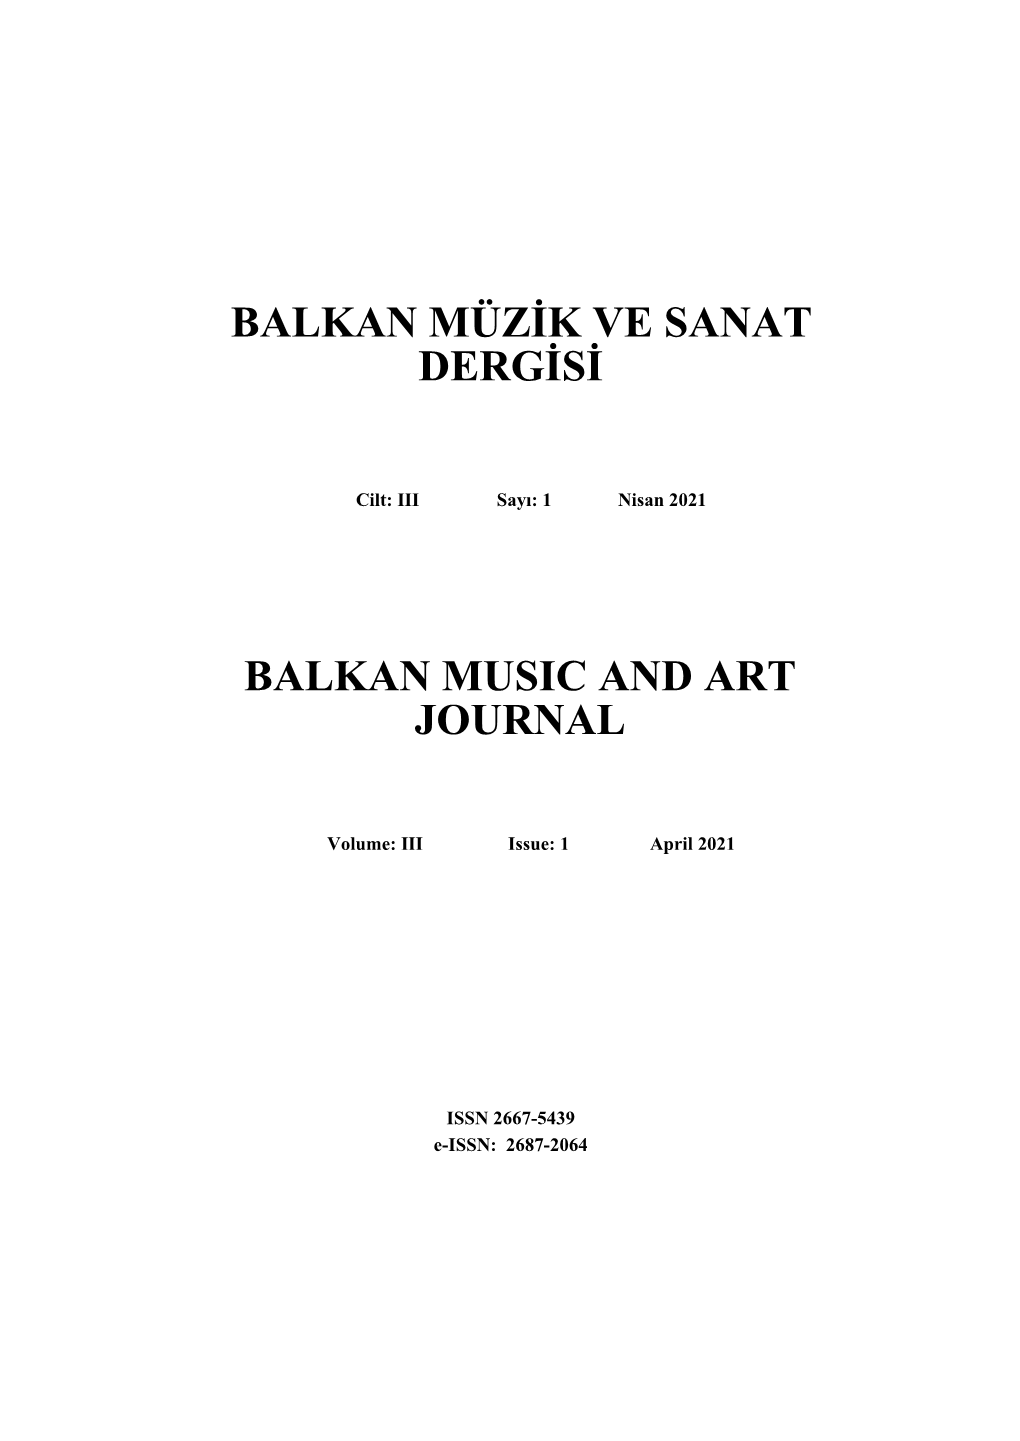 Balkan Müzik Ve Sanat Dergisi Balkan Music and Art Journal